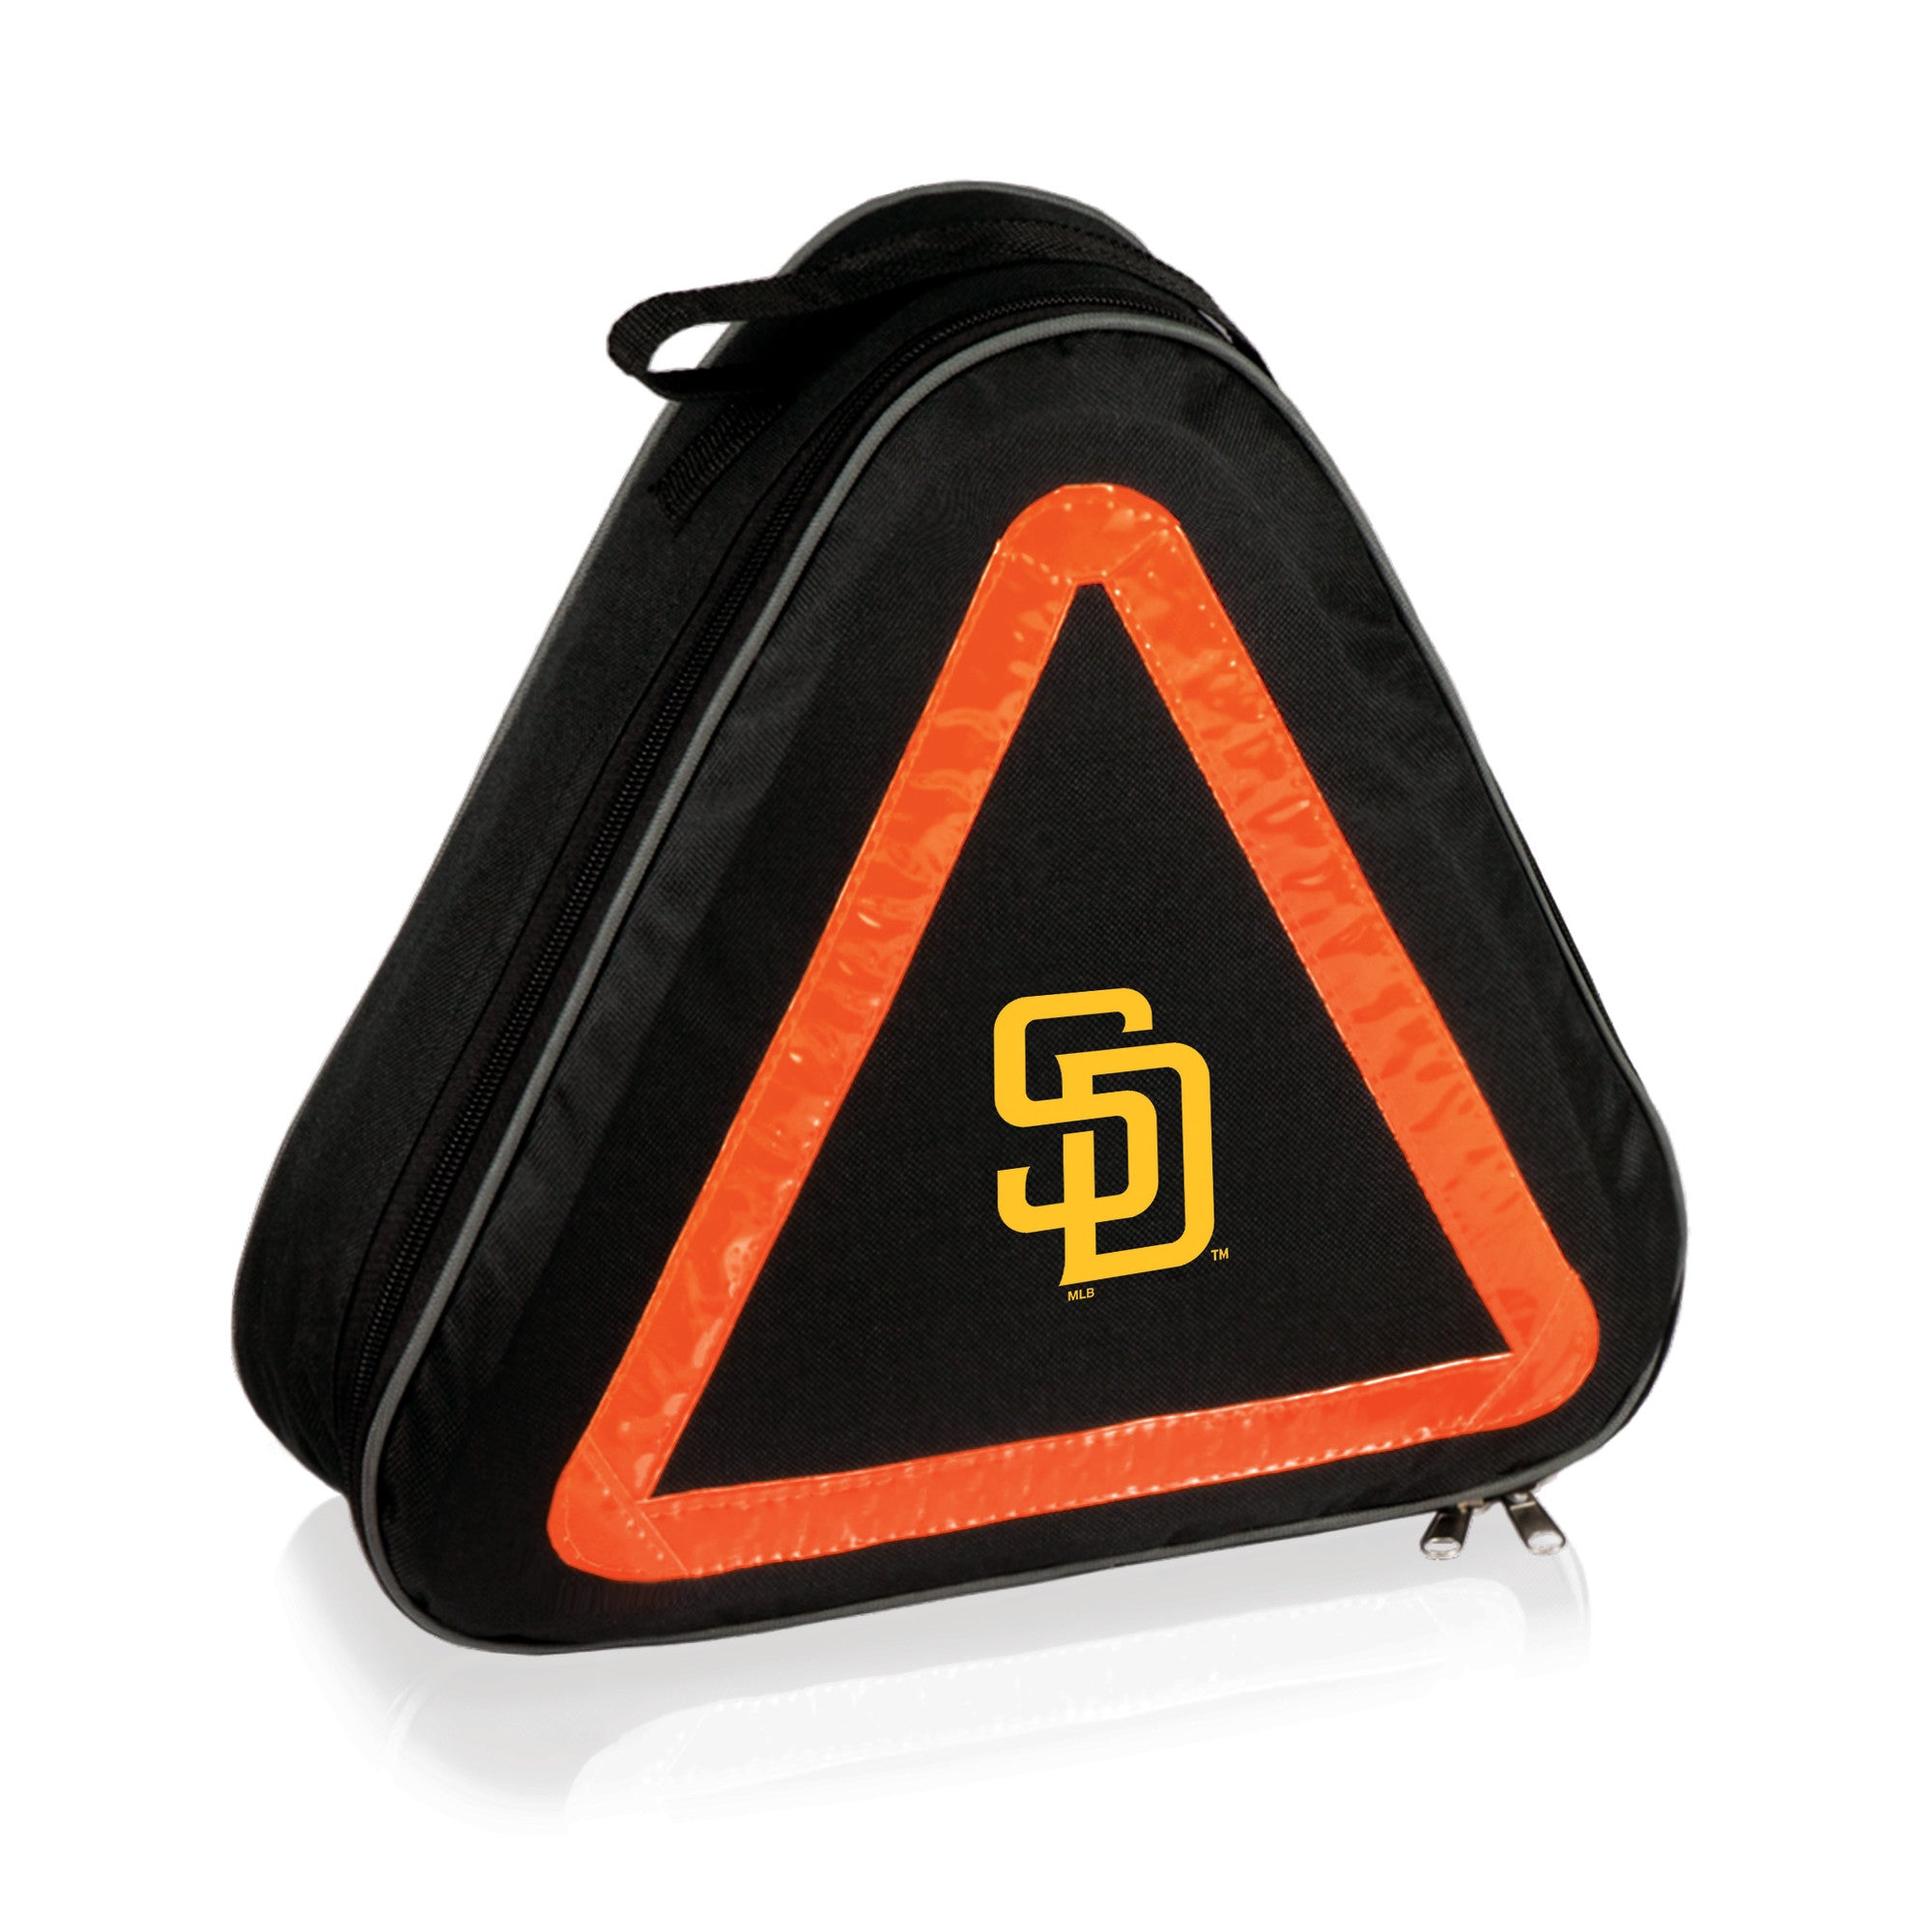 San Diego Padres - Roadside Emergency Car Kit